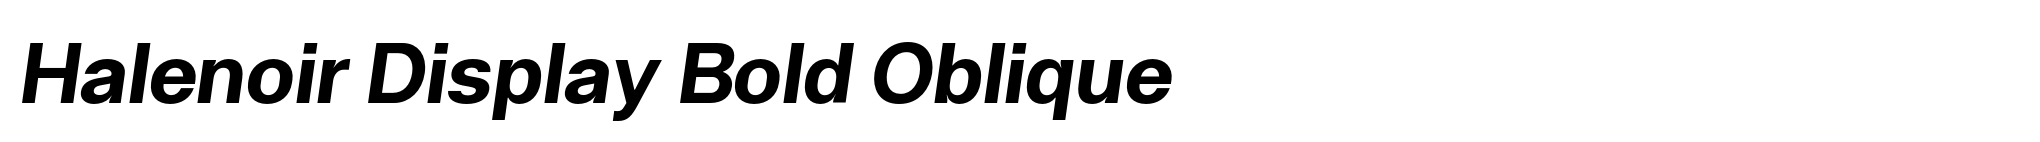 Halenoir Display Bold Oblique image